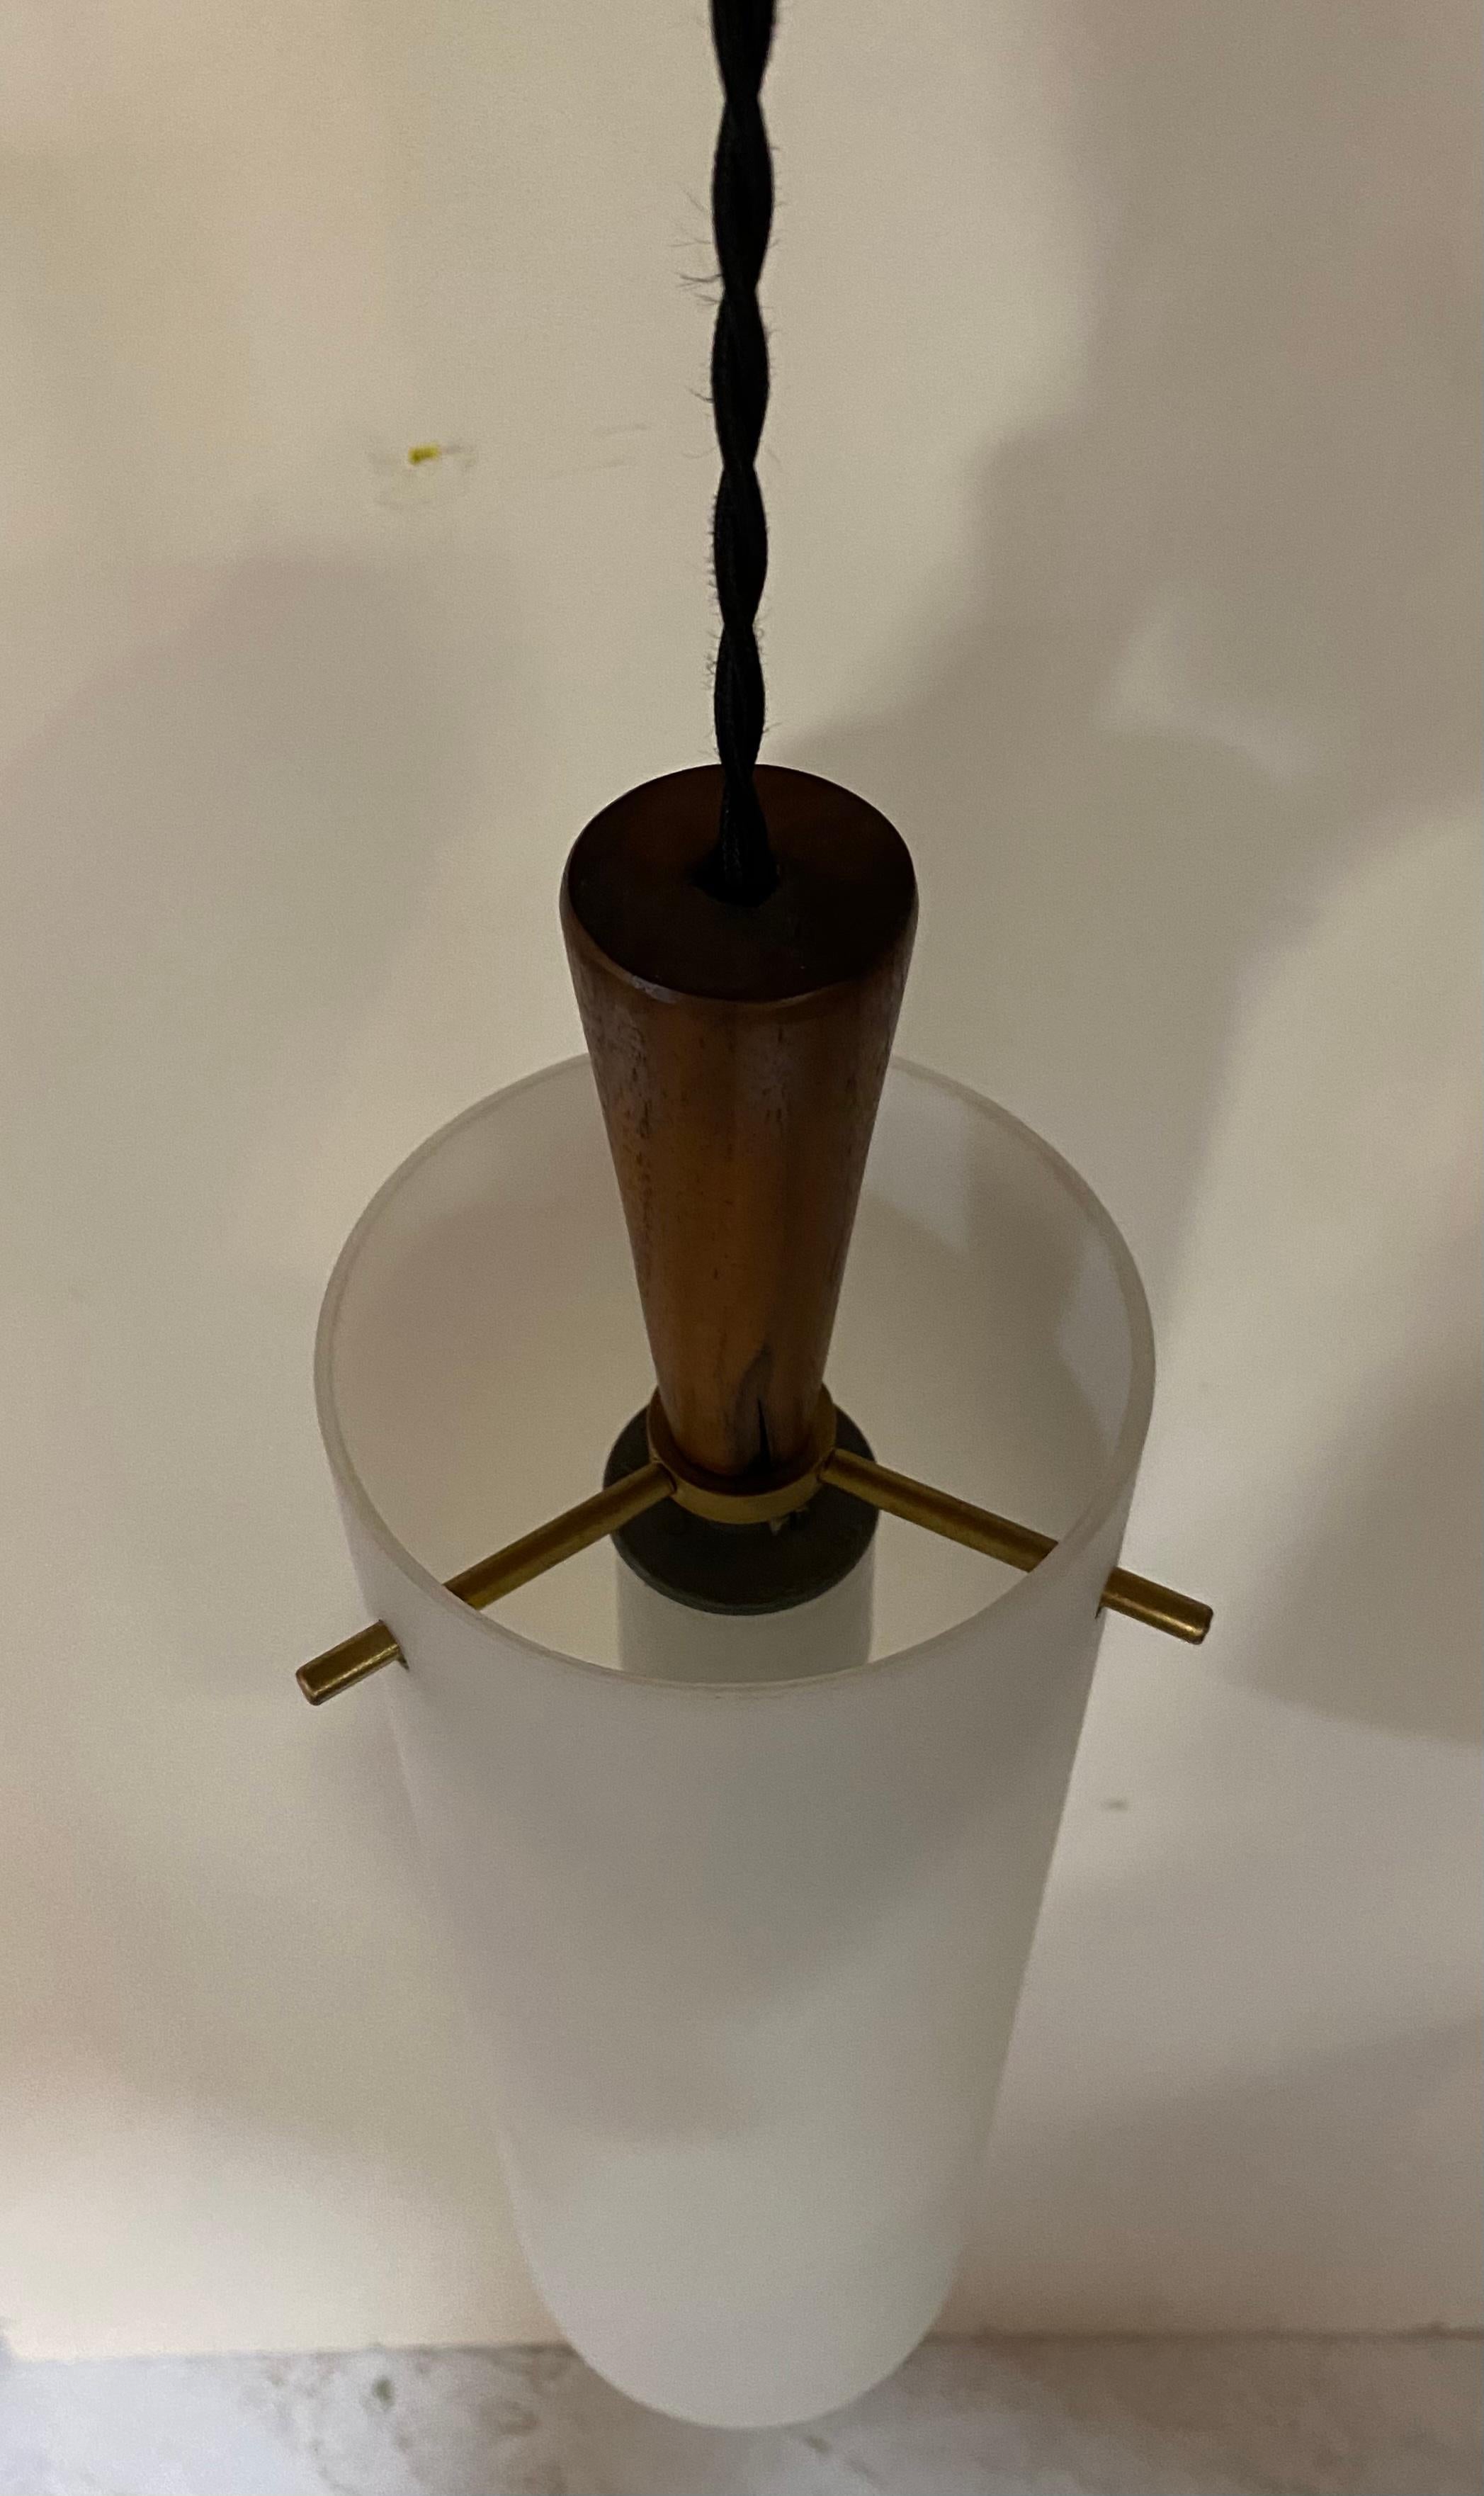 Un luminaire de Hadeland Glasswverk de Norvège, avec un abat-jour cylindrique en verre dépoli complété par des supports de broches en laiton et un chapeau en noyer, vers 1950.

Non signé mais largement documenté. Accepte une ampoule standard